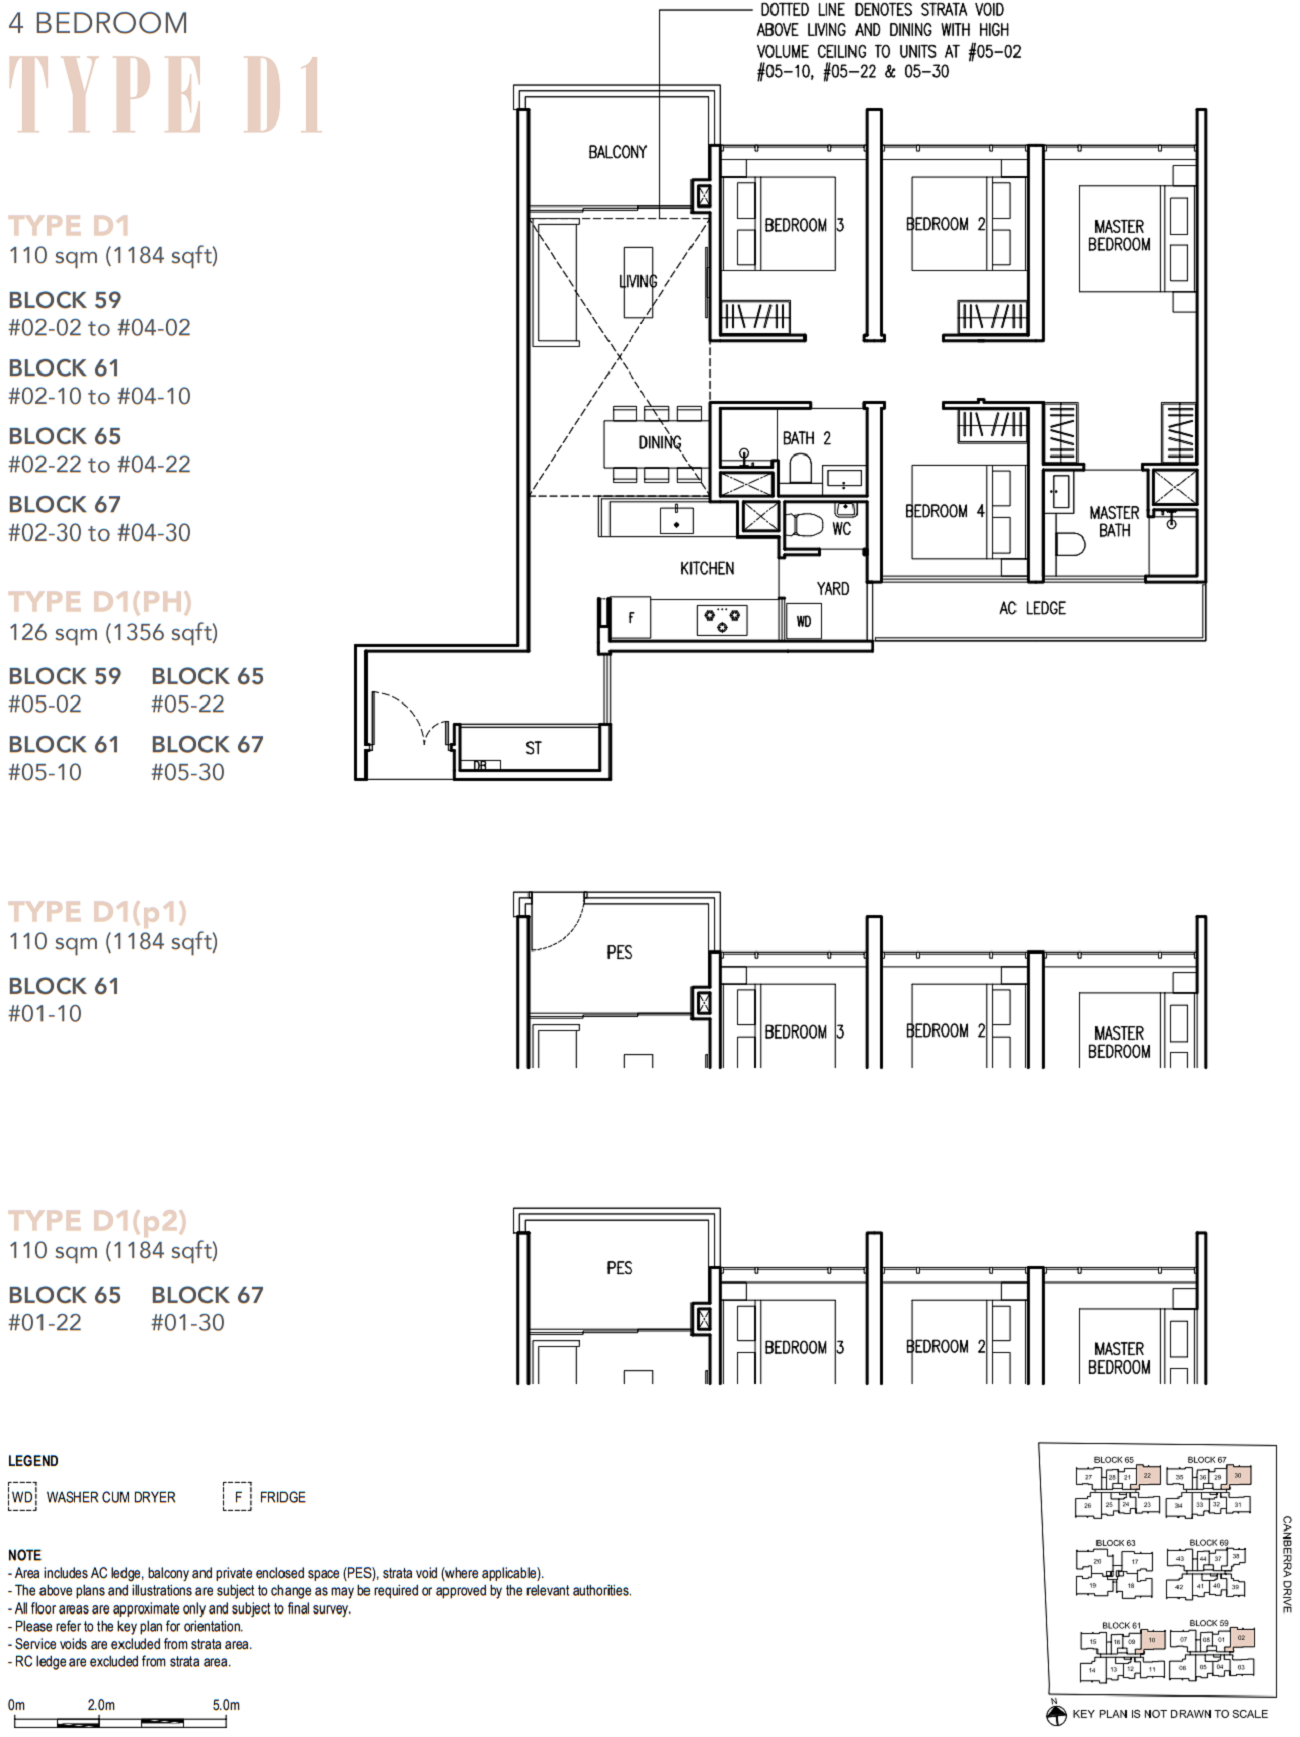 The Commodore Floor Plan 4 Bedroom Type D1 110_1184